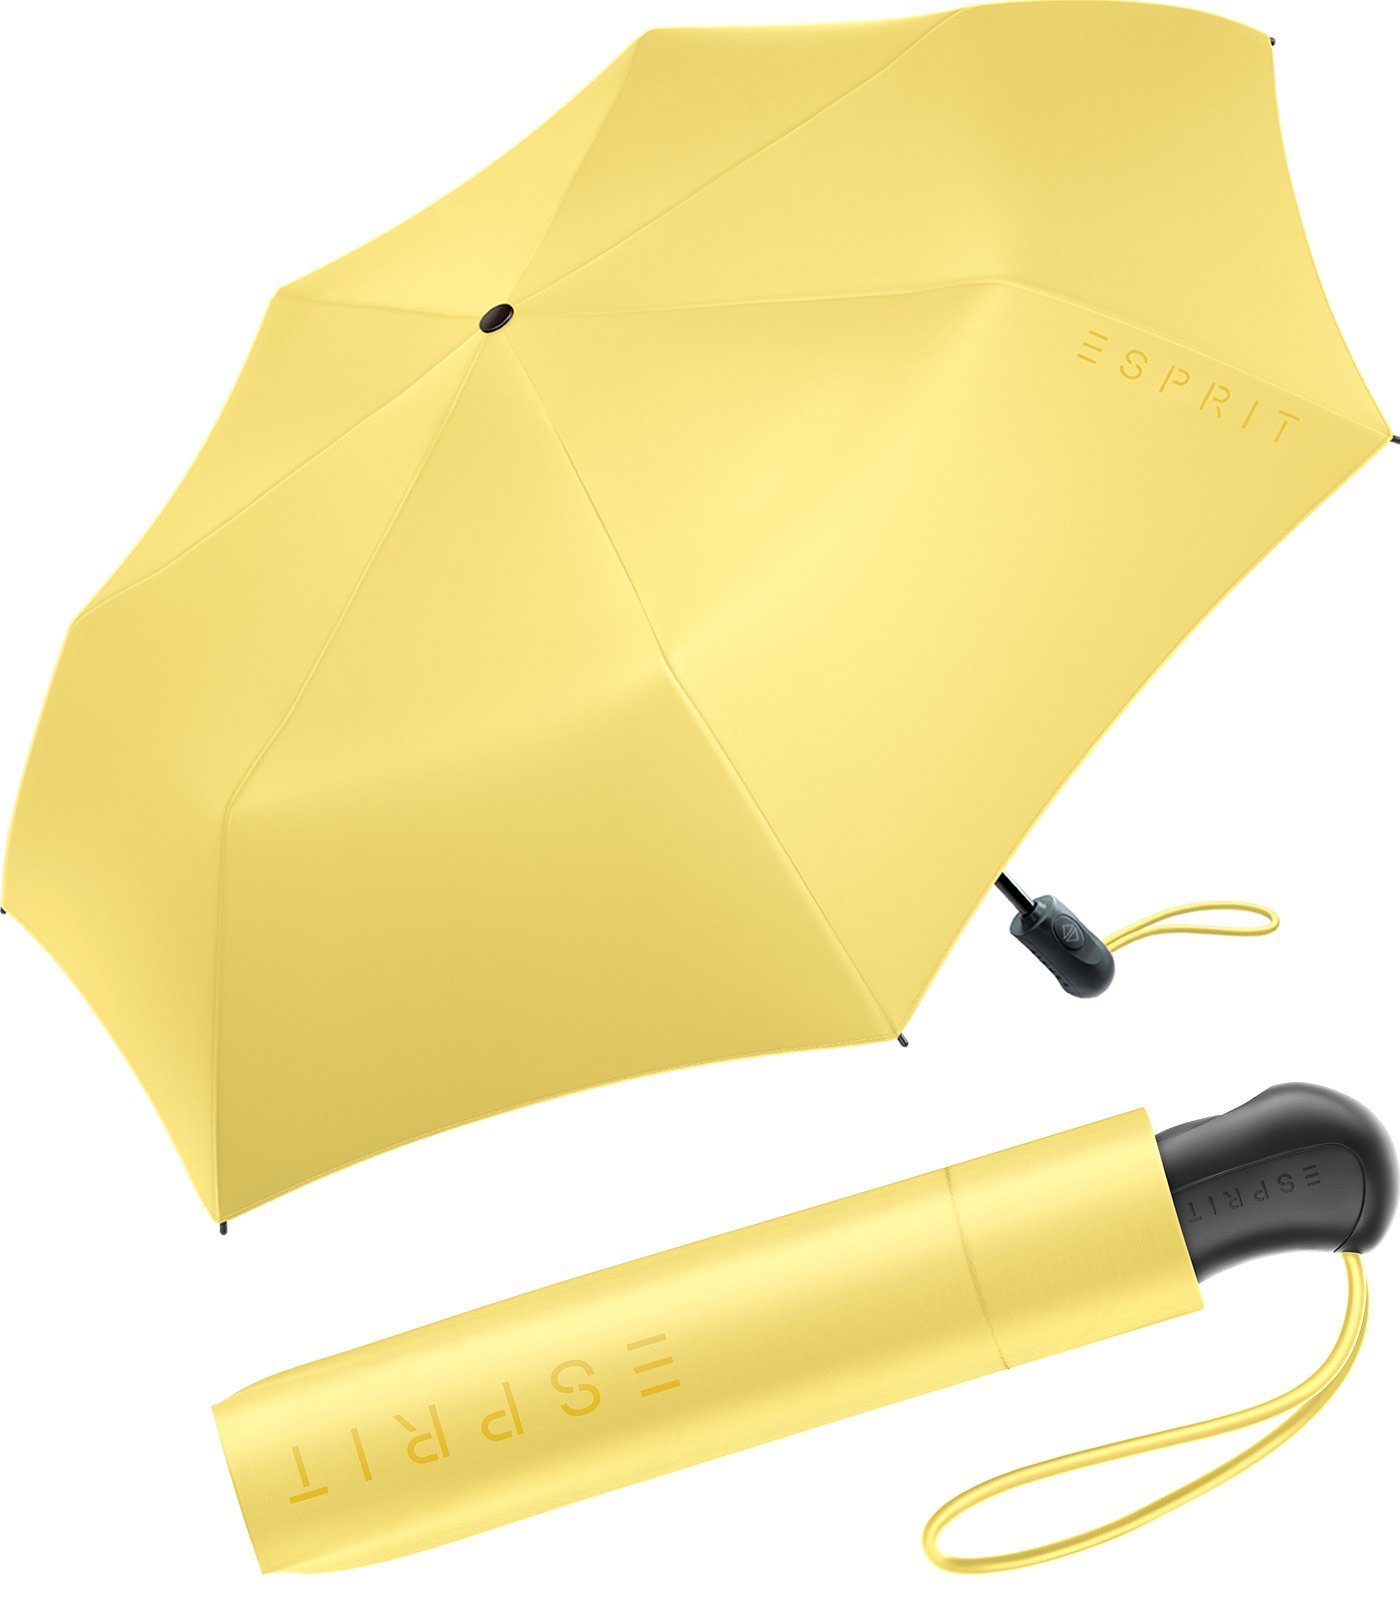 Esprit Taschenregenschirm Damen Easymatic Light Auf-Zu Automatik FJ 2023, stabil und praktisch, in den neuen Trendfarben gelb